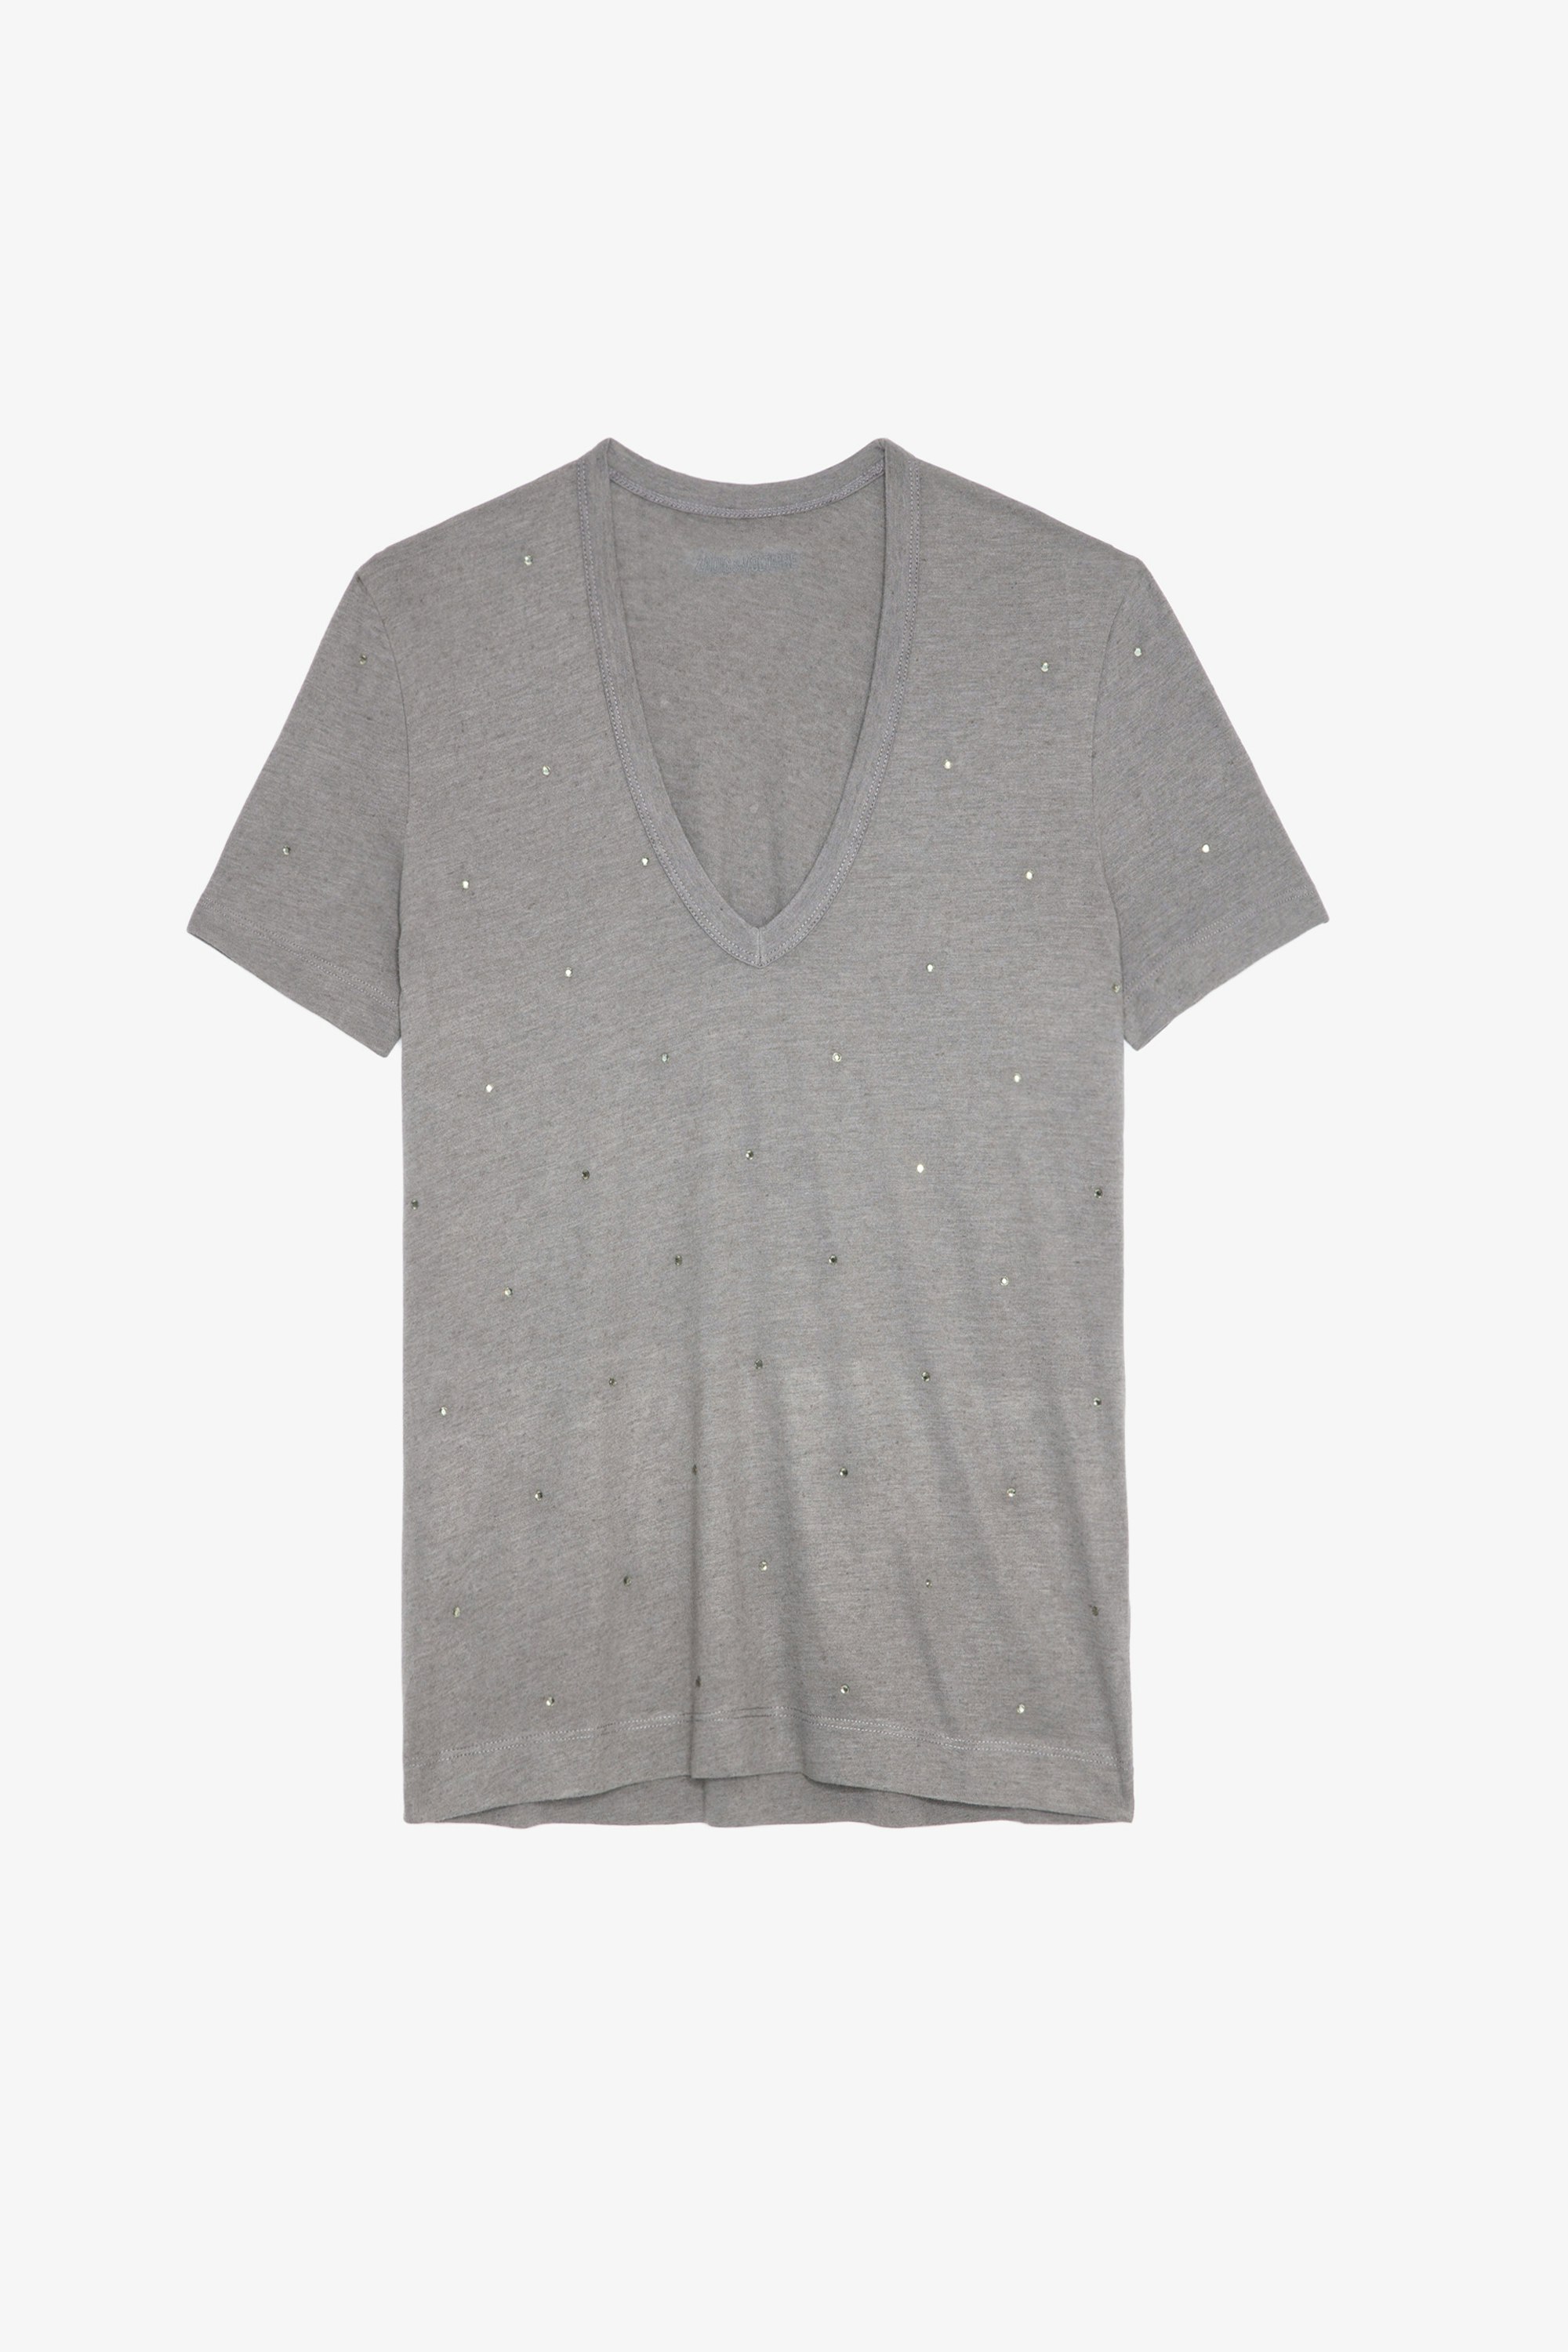 T-shirt Wassa Strass - T-shirt gris orné de strass.